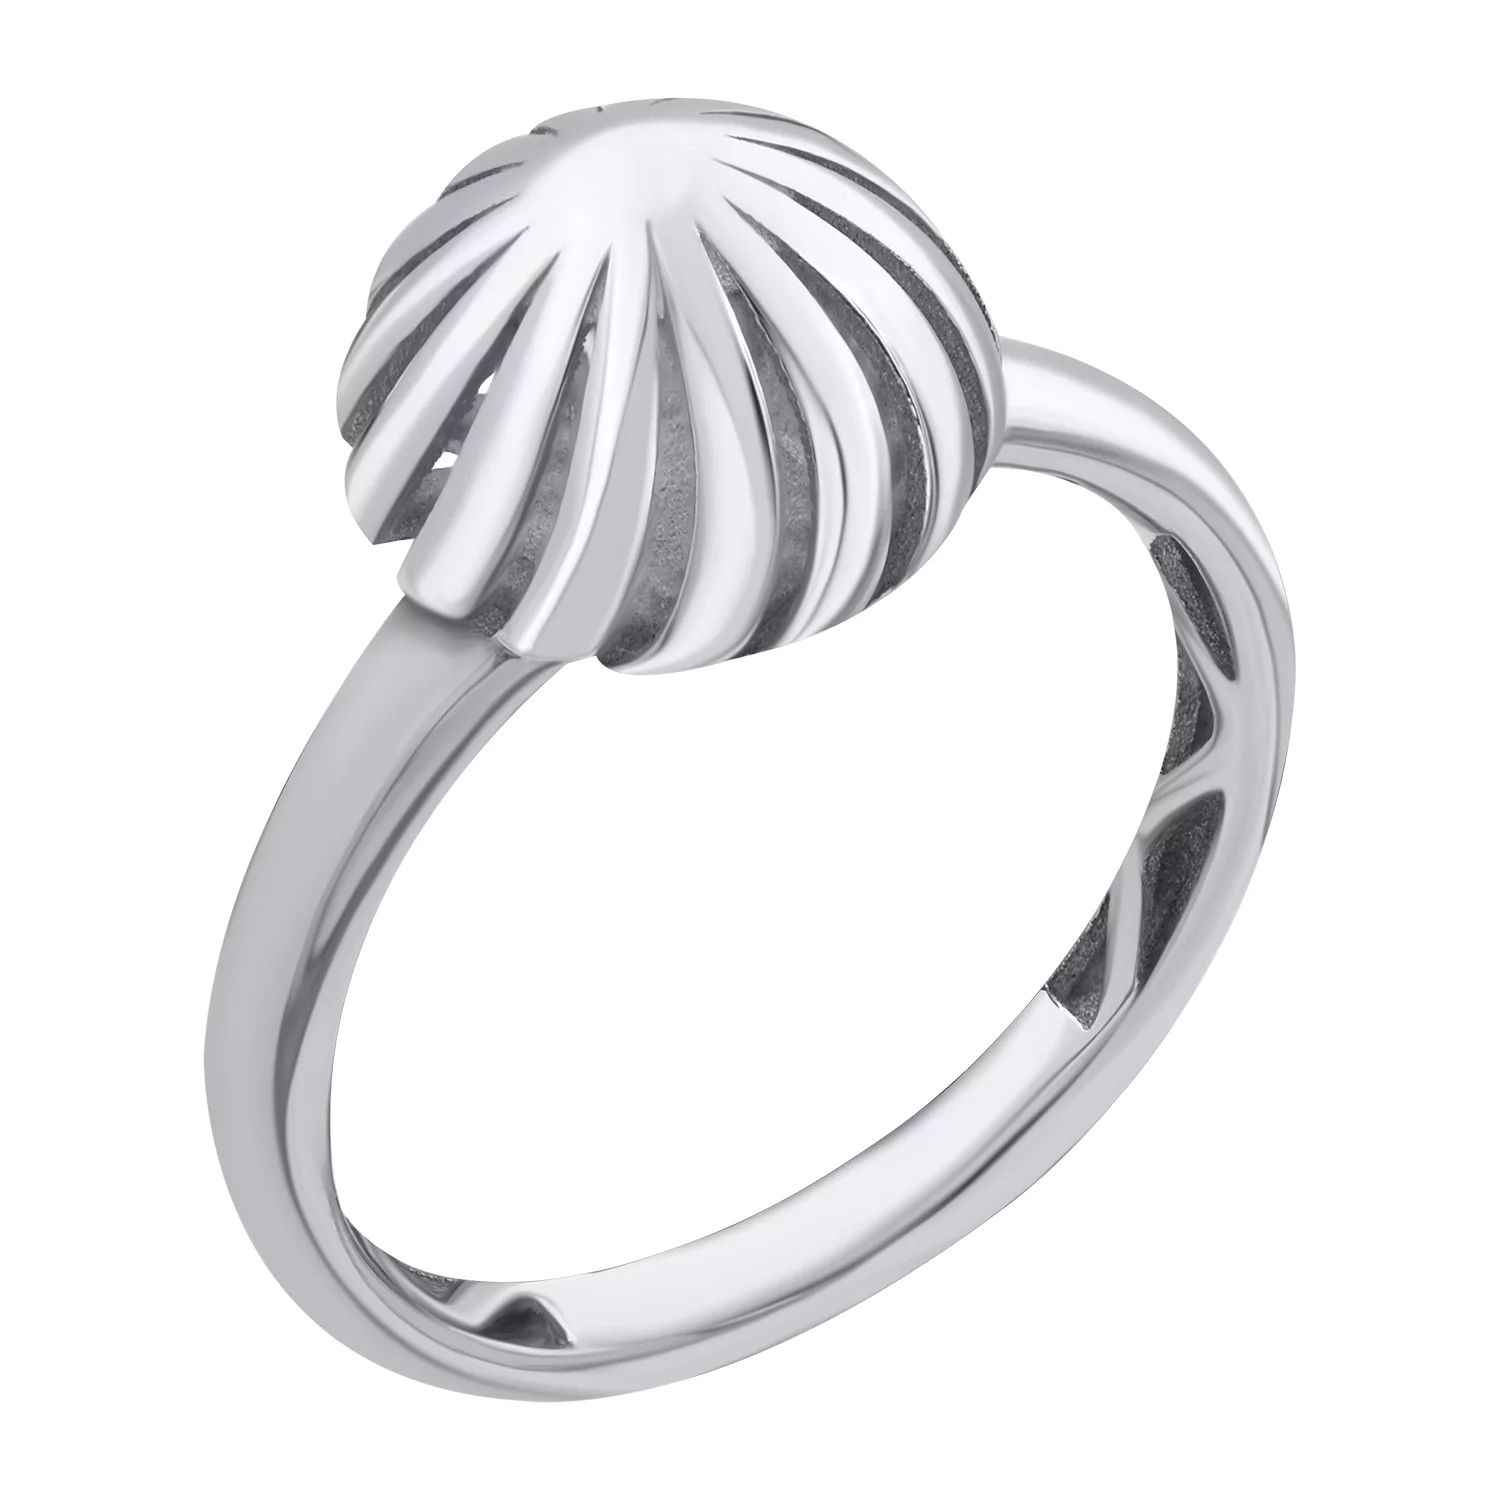 Кольцо серебряное с платиновым покрытием. Артикул 7501/500756-Пл: цена, отзывы, фото – купить в интернет-магазине AURUM